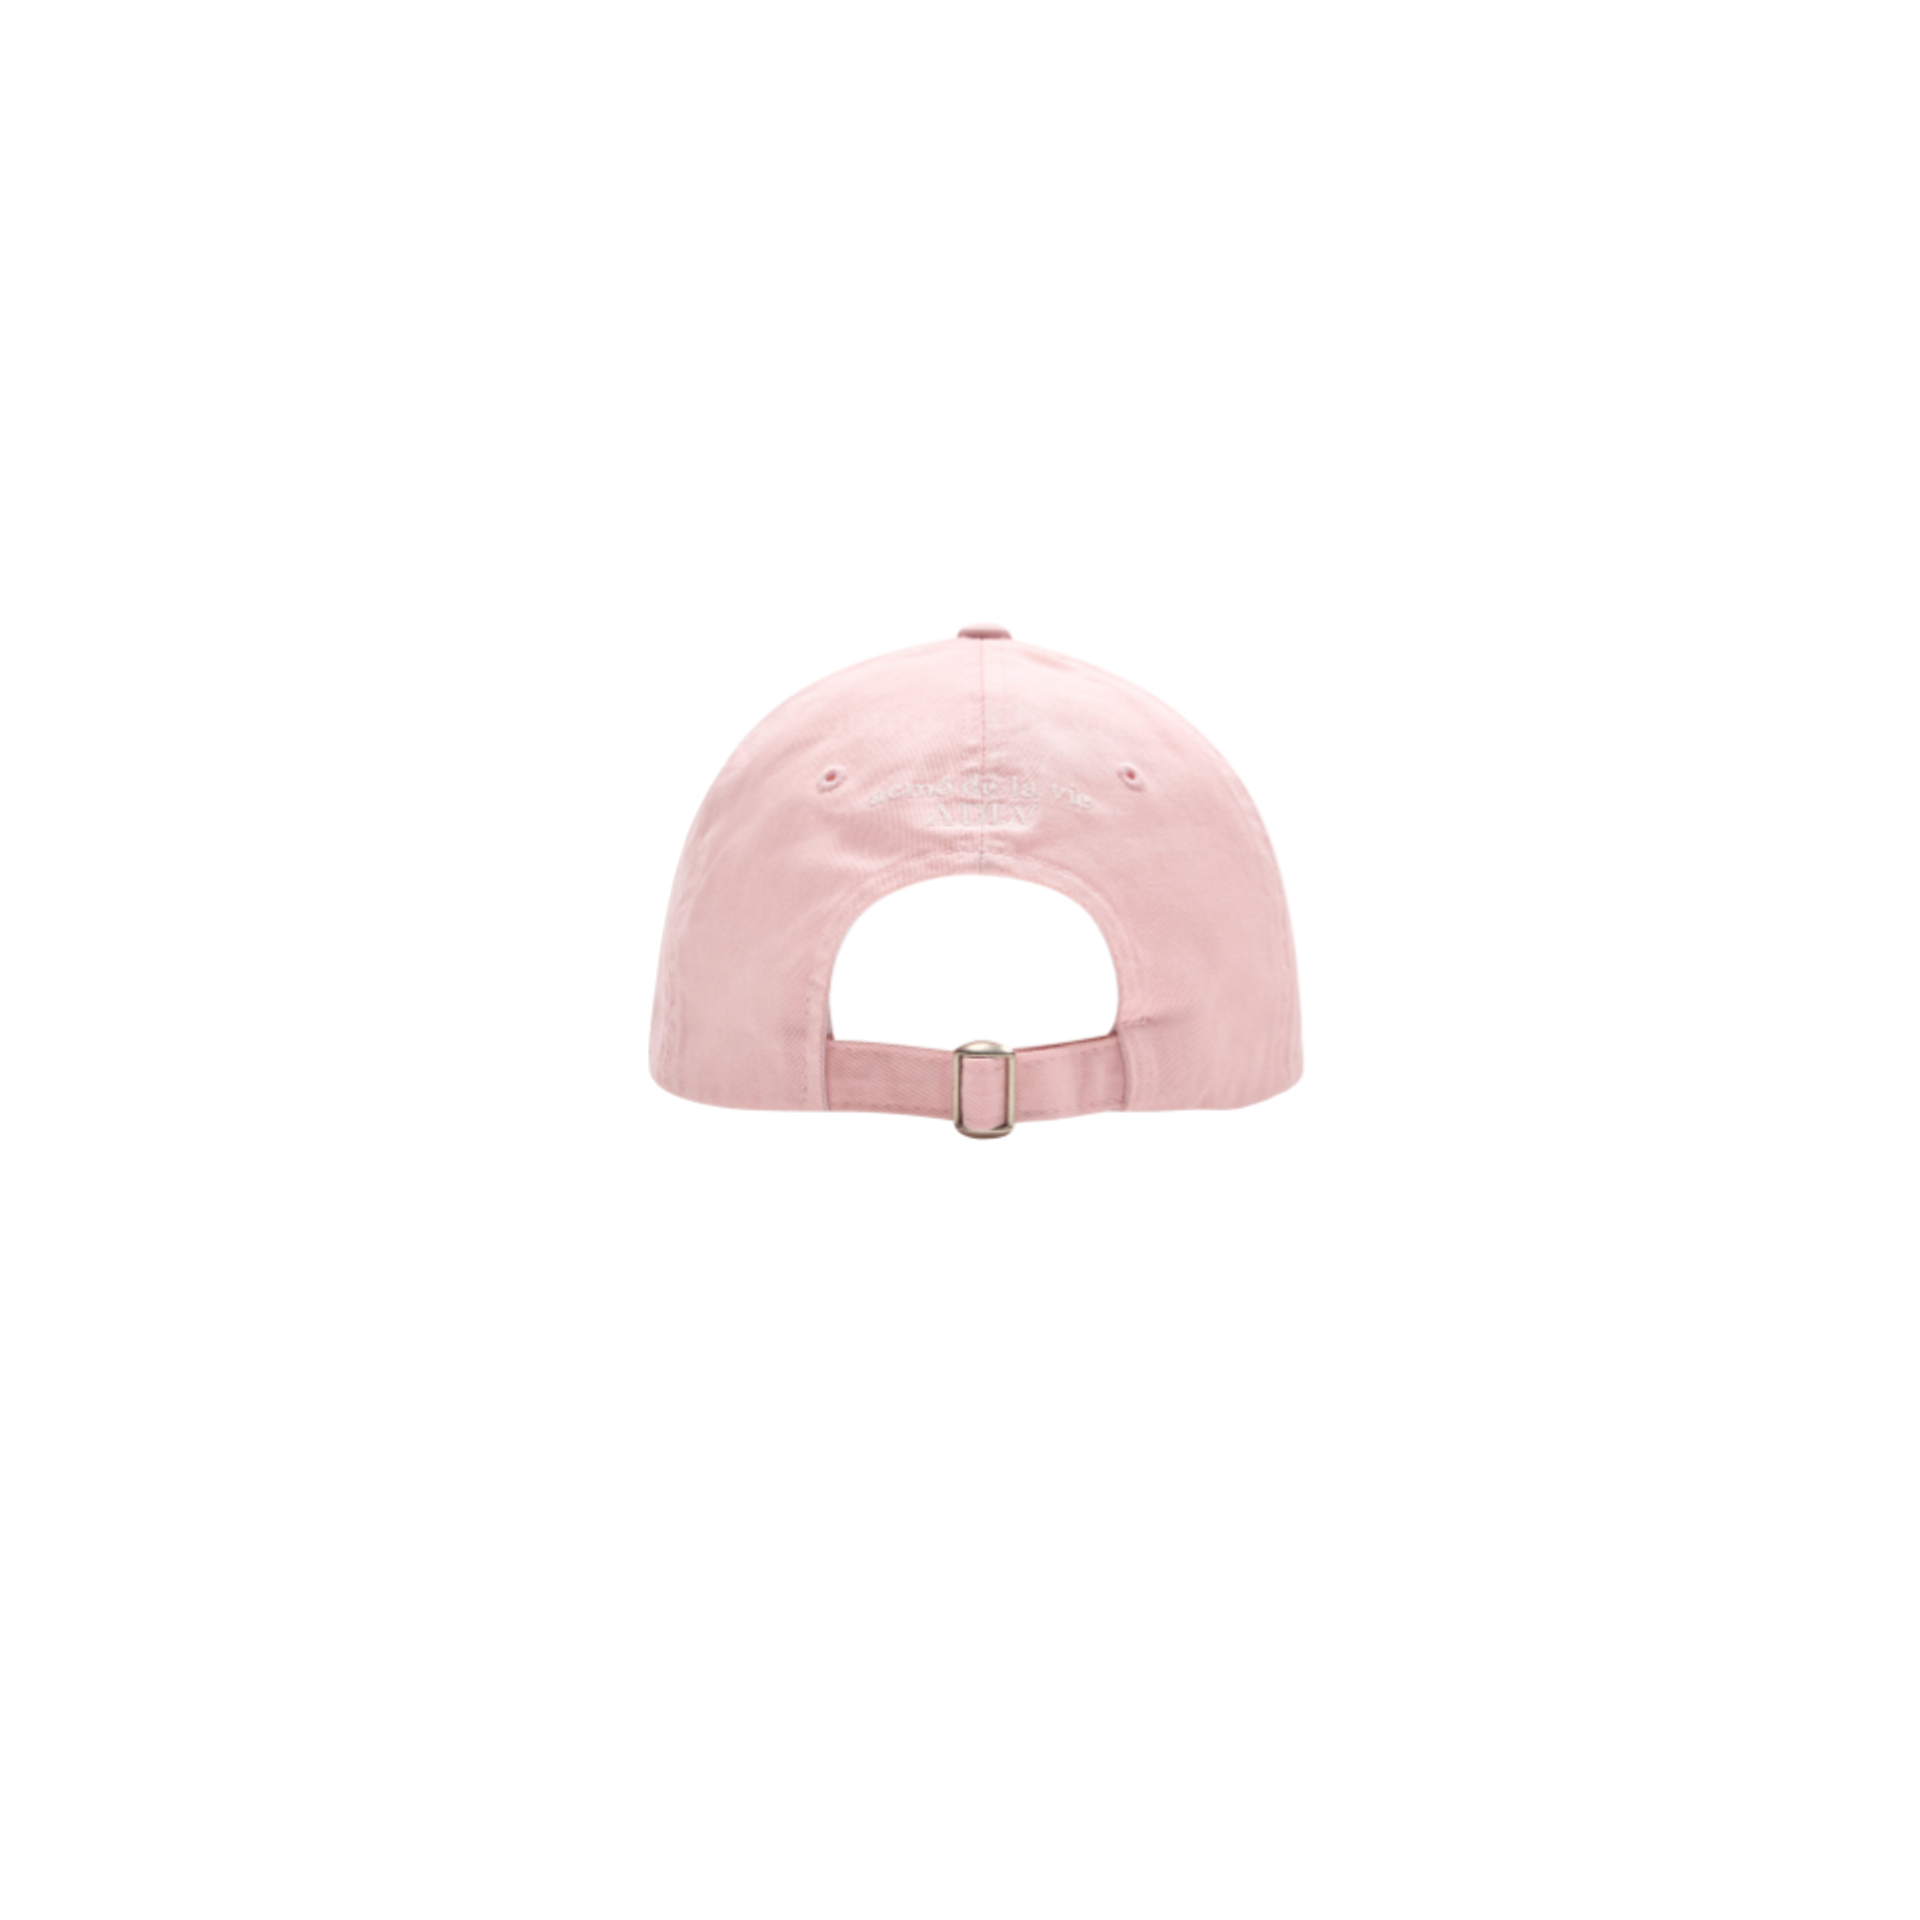 Acme De La Vie x LISA A Logo Emblem Embossing Patch Ball Cap Pink